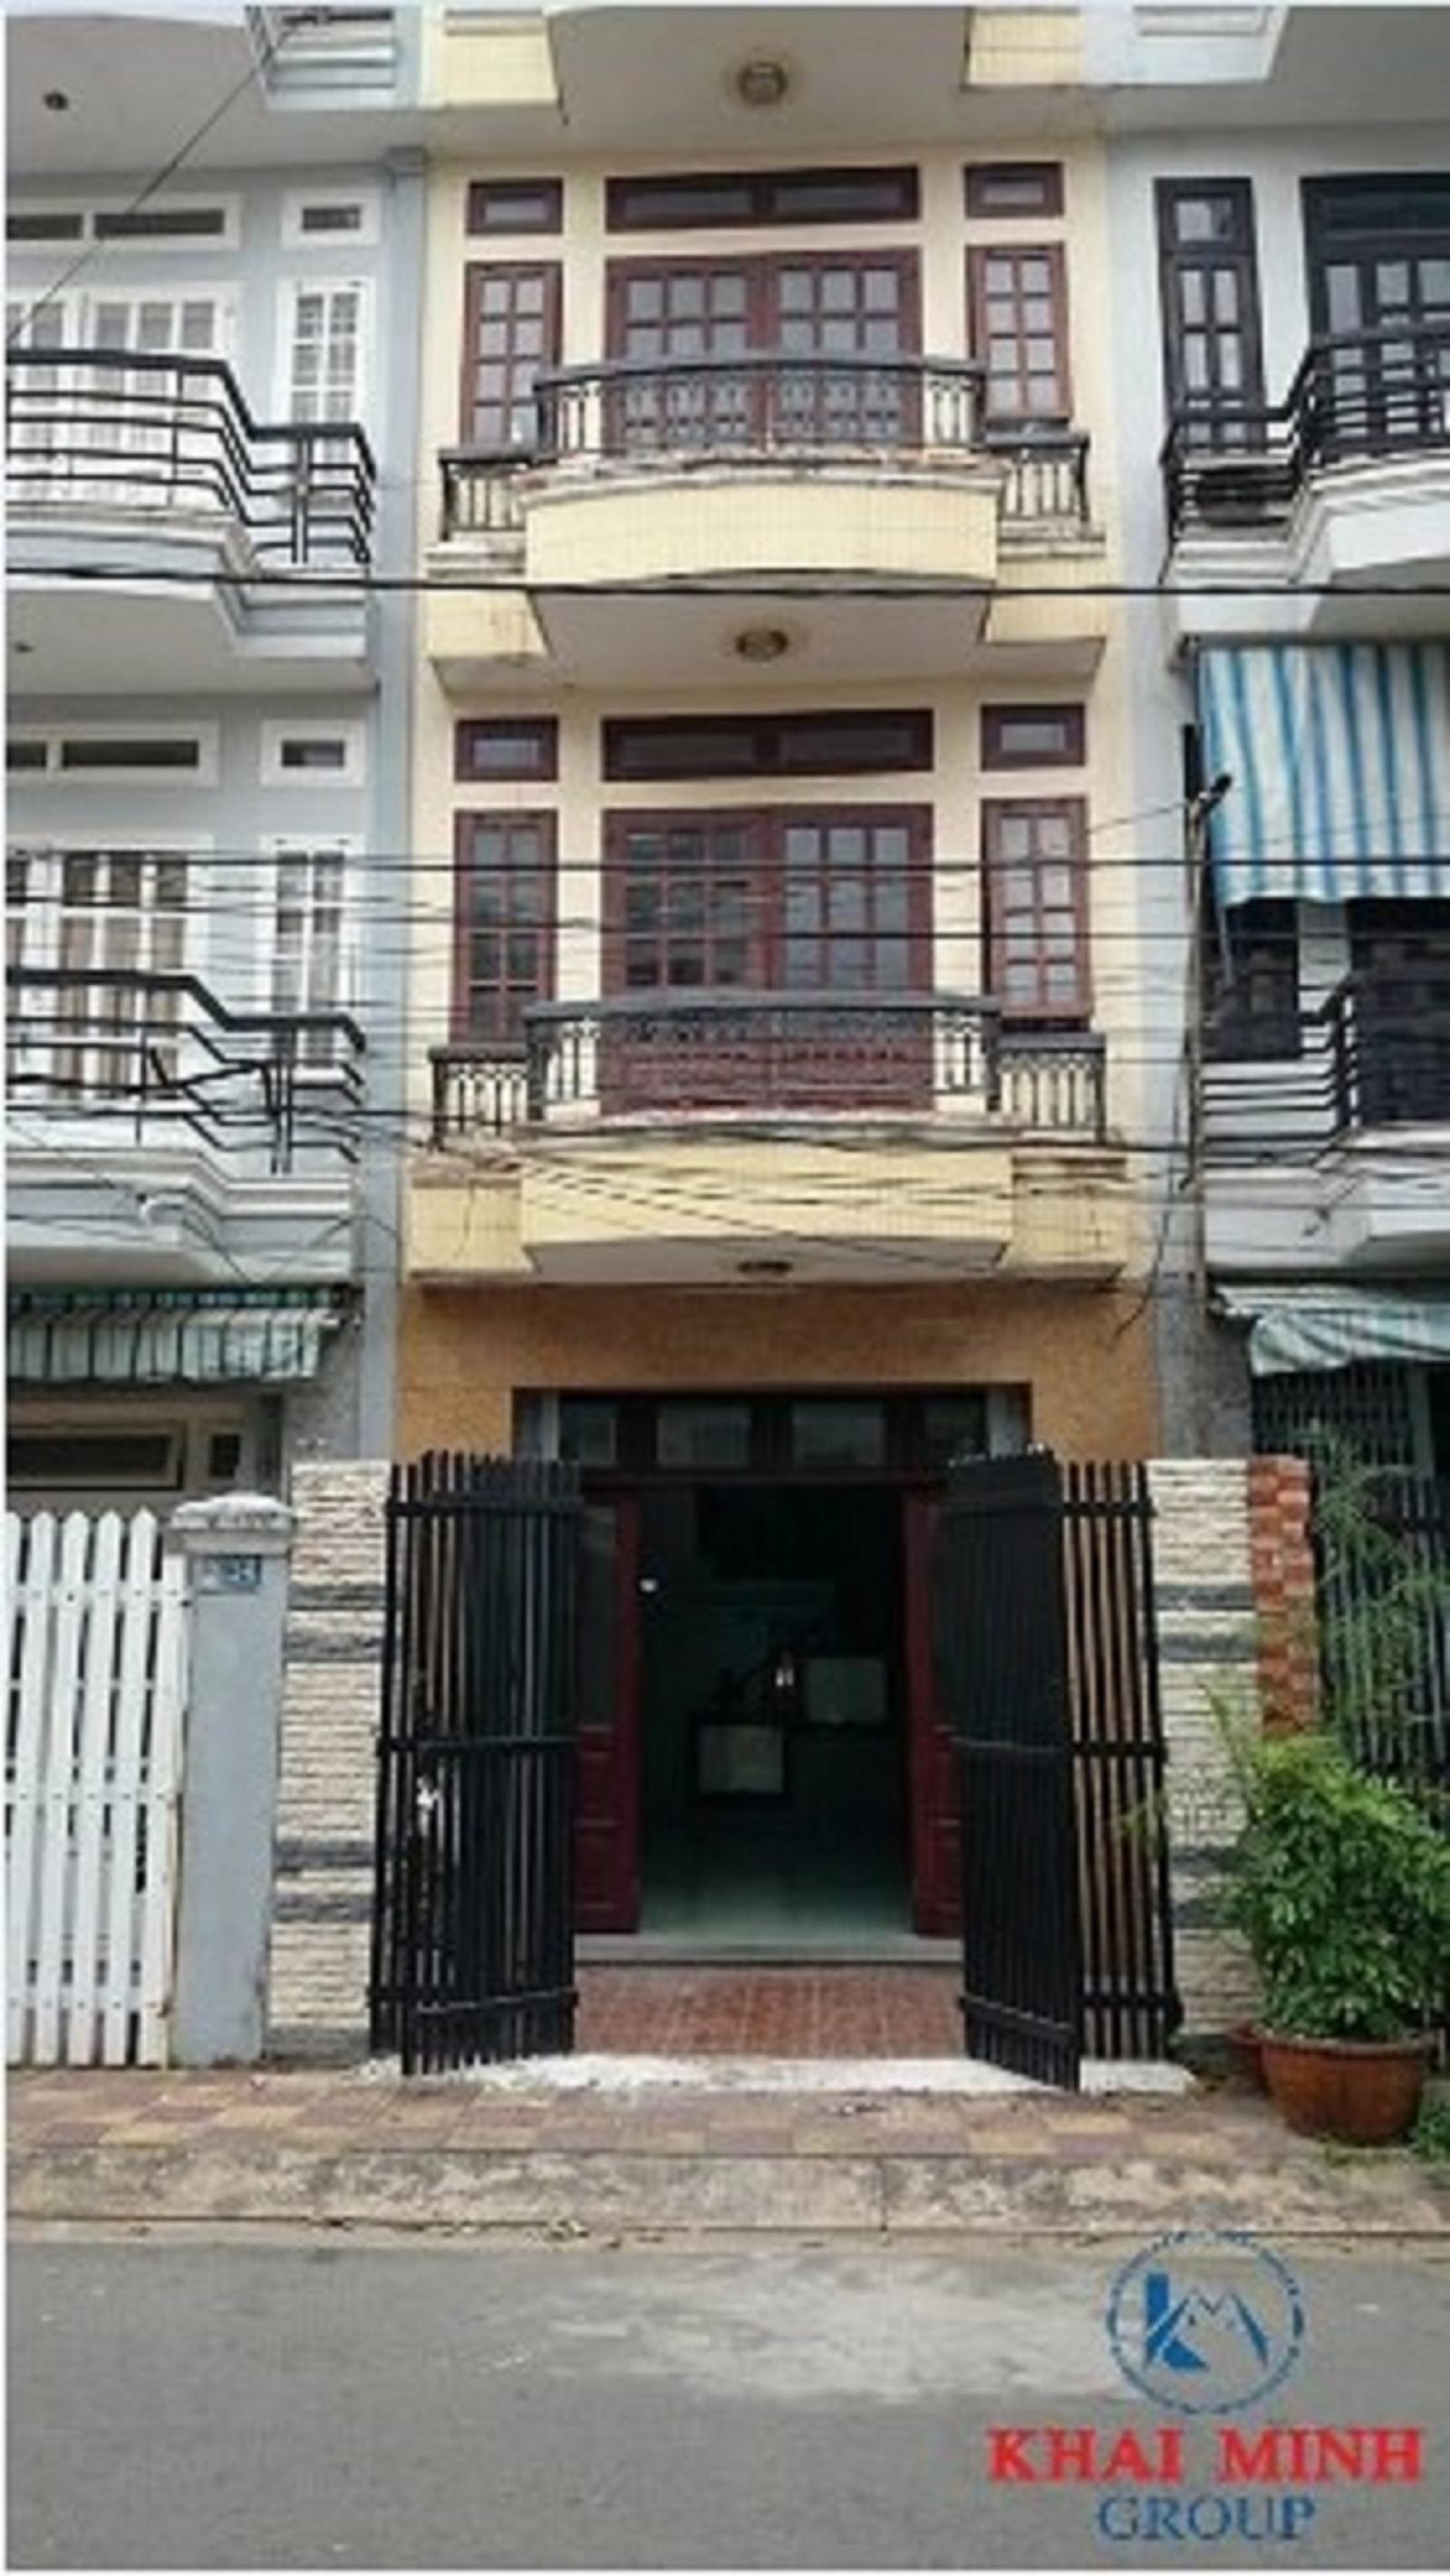 Phòng trọ GIỜ GIẤC TỰC DO, WC RIÊNG, KDC BÌNH LỢI, gần ĐH Văn Lang CS3, giá 3.2TR